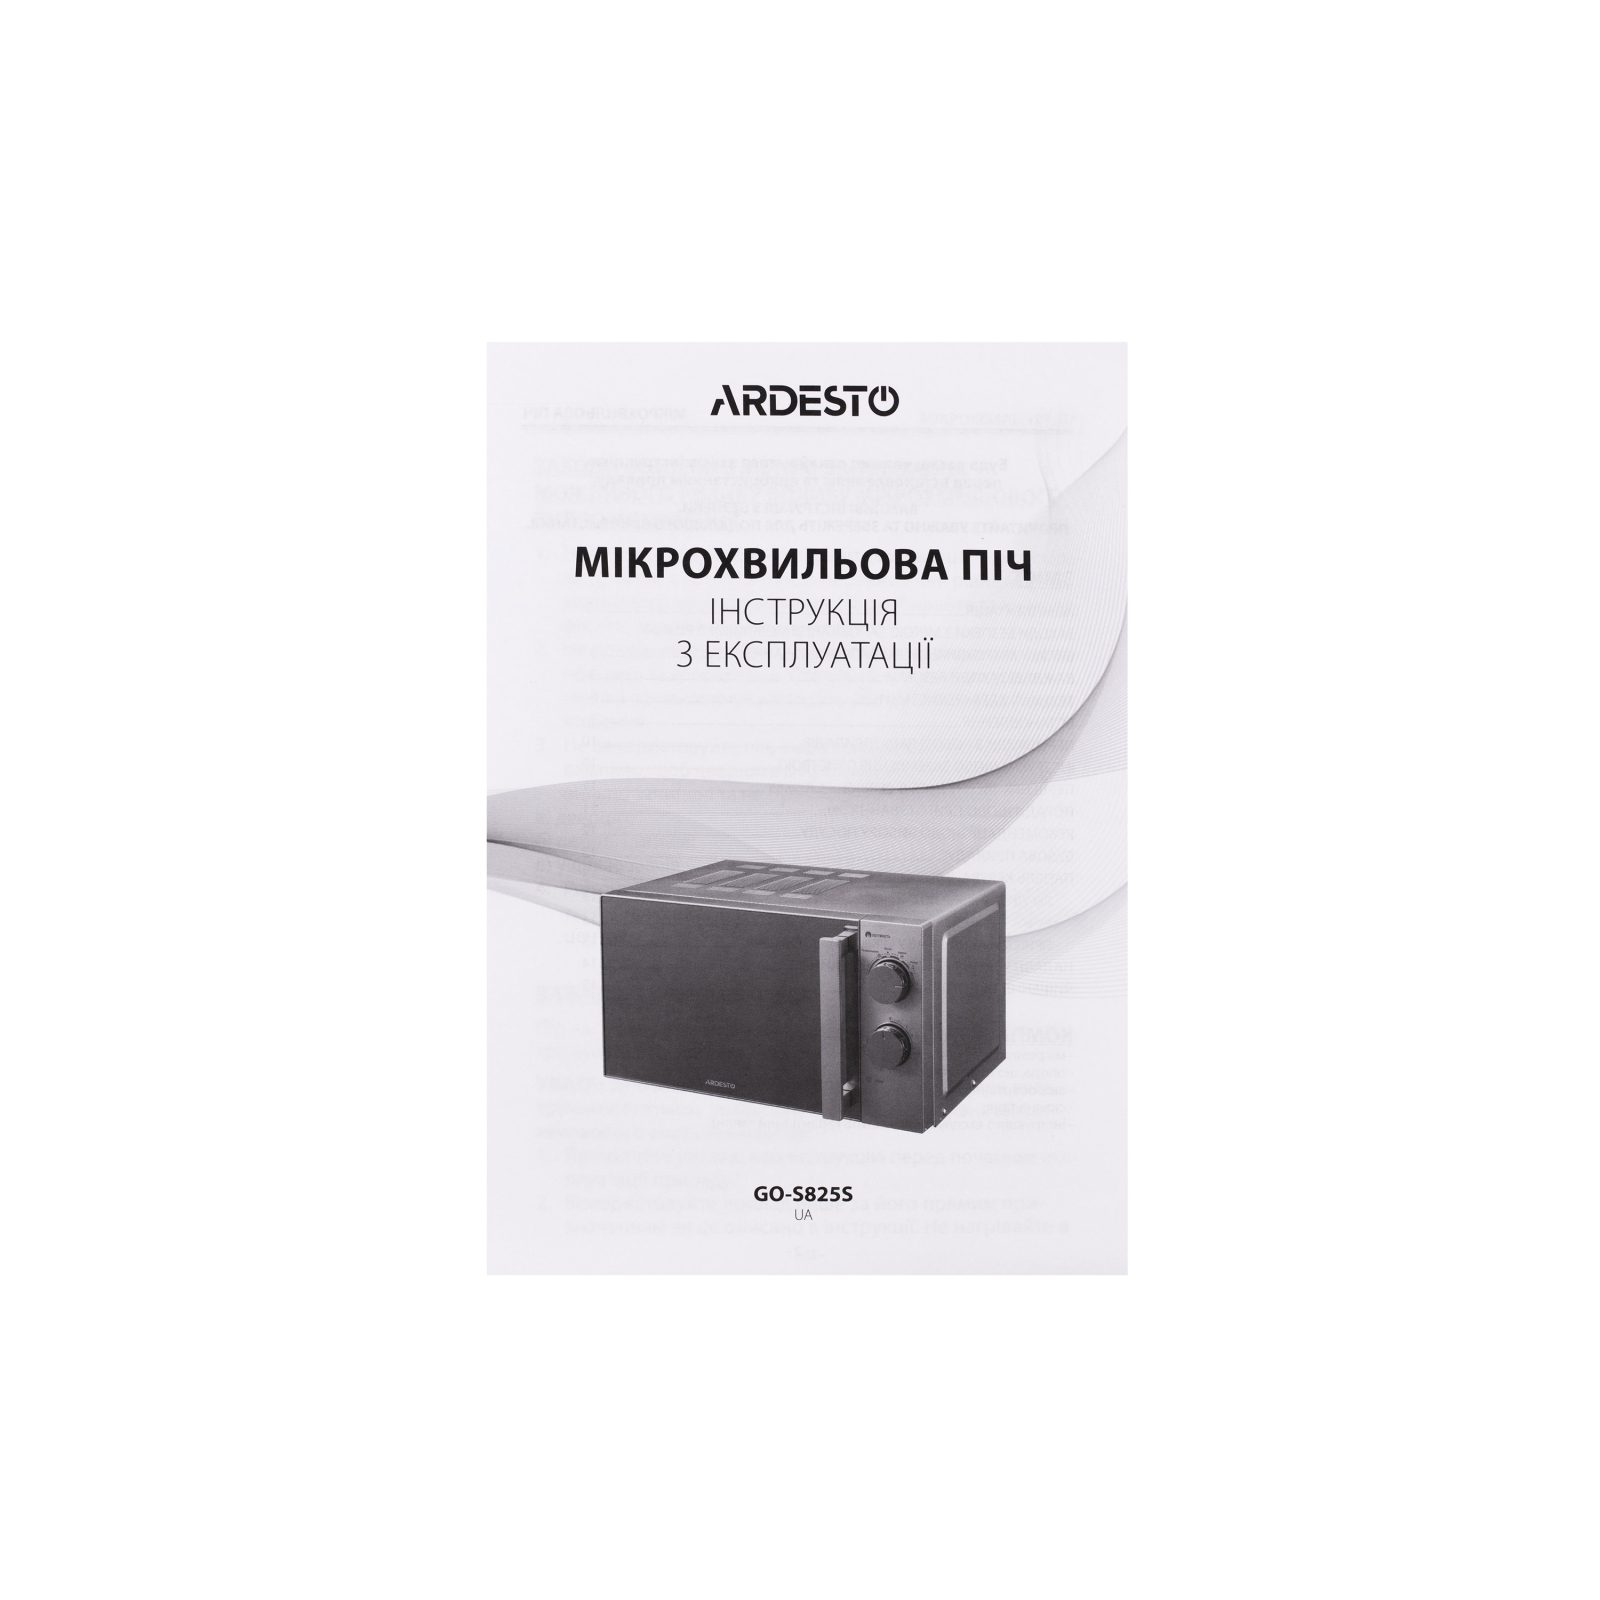 Микроволновая печь Ardesto GO-S825S изображение 4